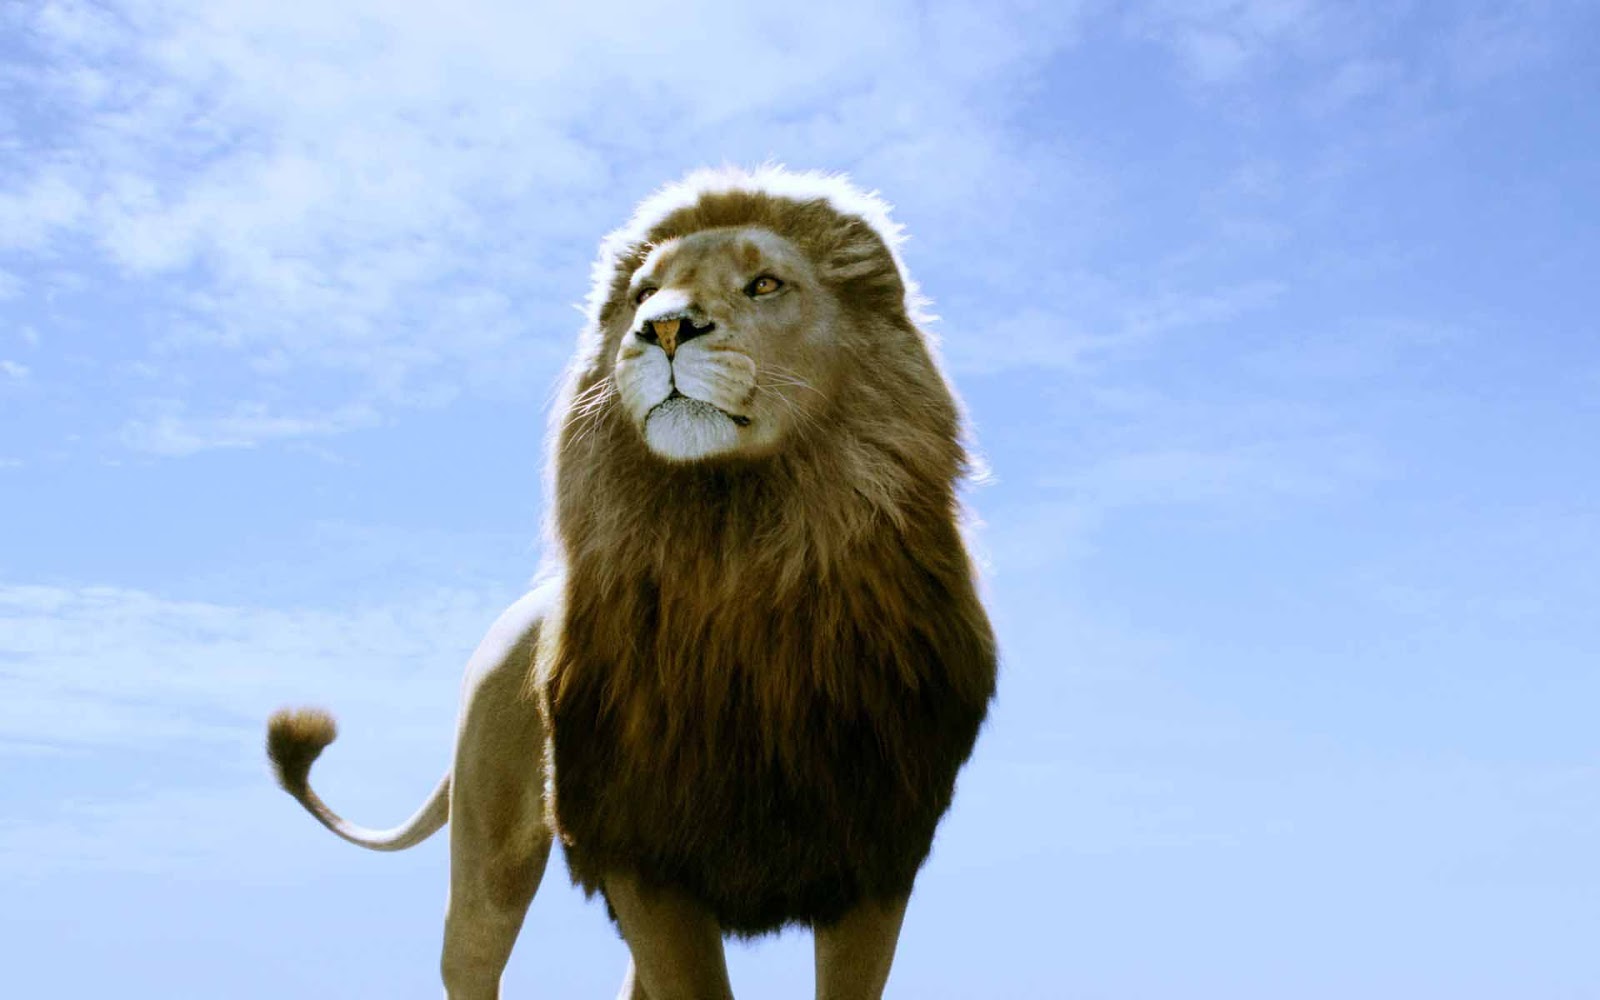 ナルニア国壁紙,ライオン,野生動物,ネコ科,マサイライオン,陸生動物